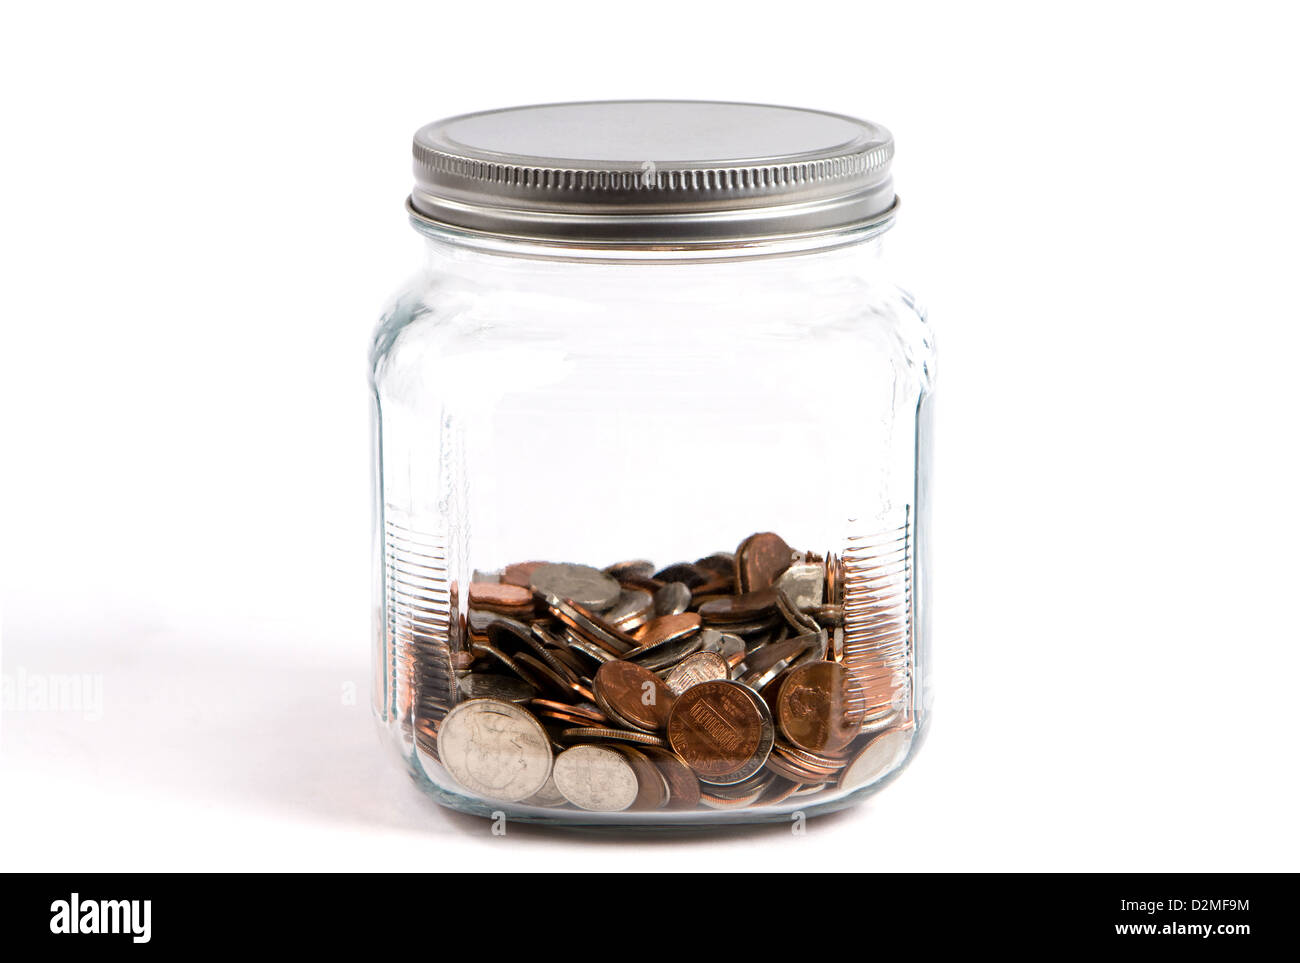 Kleingeld-Glas oder Sparschwein hält Münzen in einem Glasbehälter auf weißem Hintergrund. Stockfoto